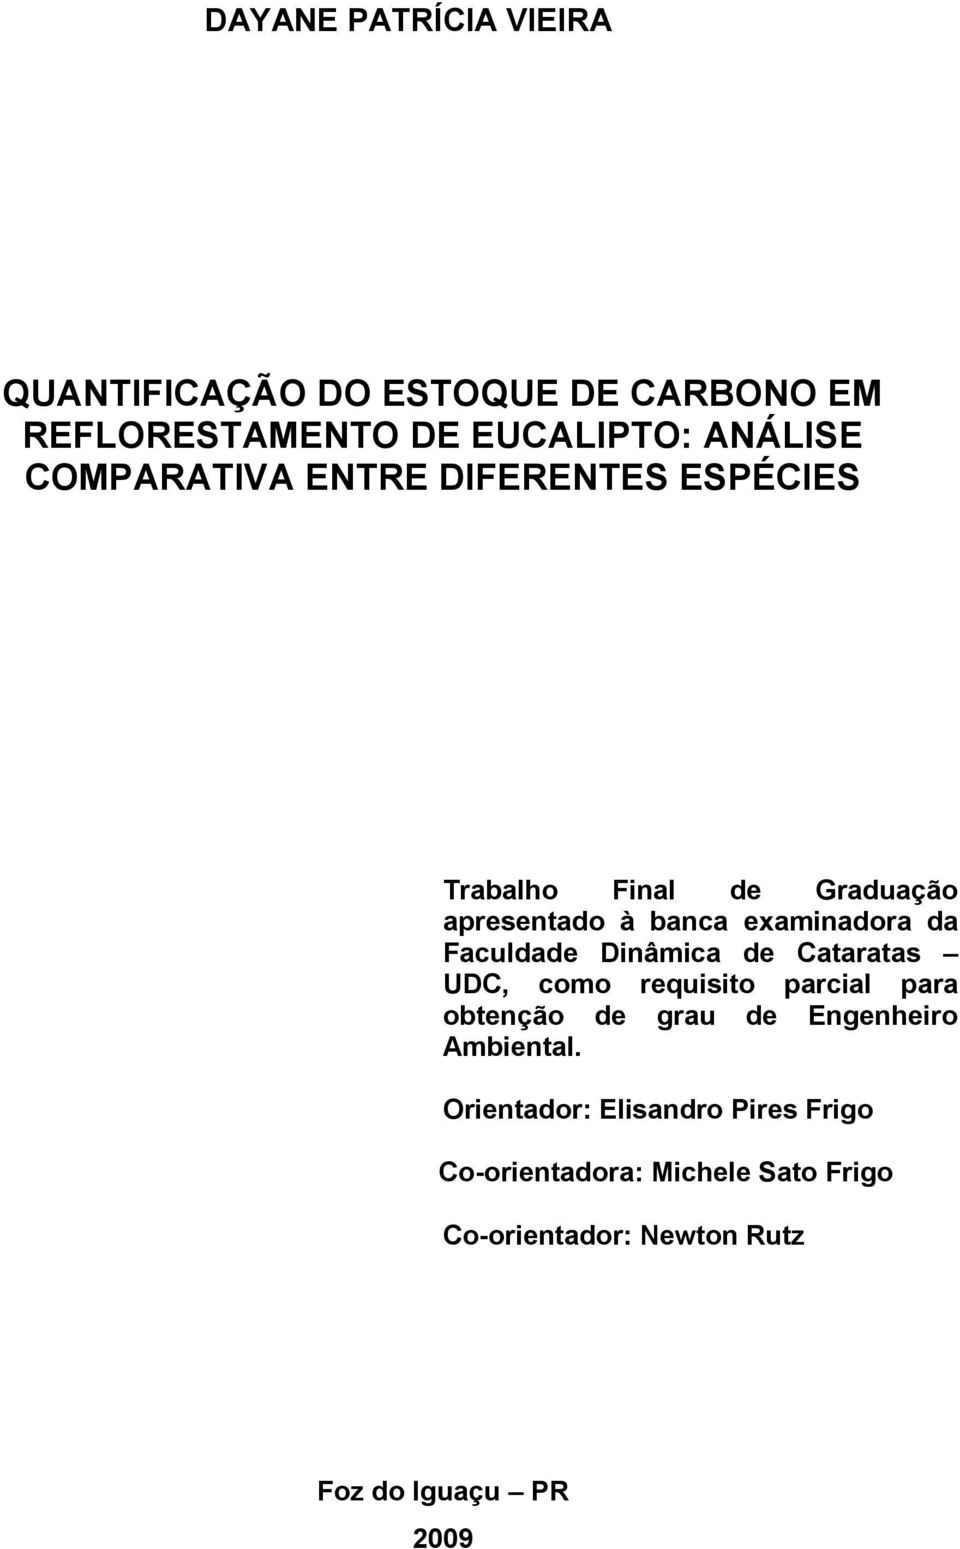 Faculdade Dinâmica de Cataratas UDC, como requisito parcial para obtenção de grau de Engenheiro Ambiental.